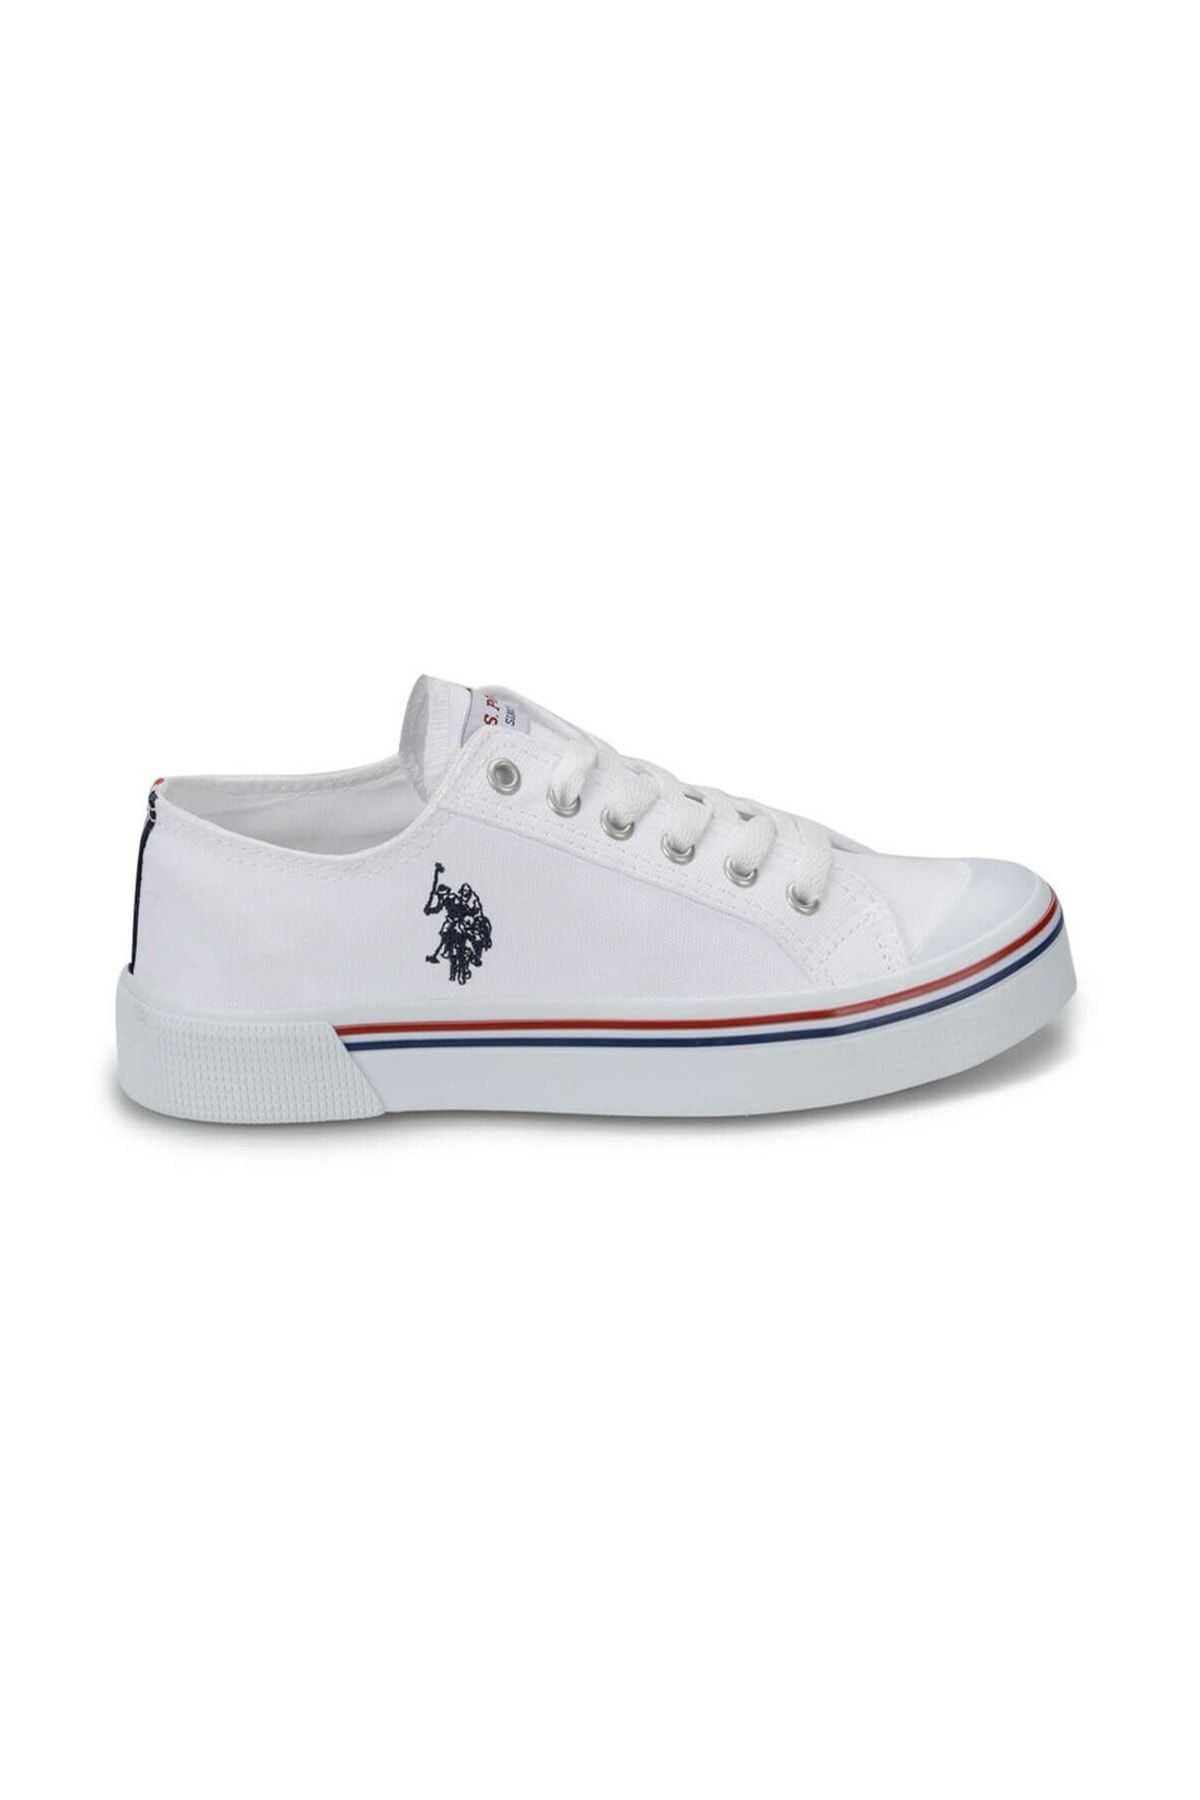 PENELOPE Beyaz Kadın Sneaker 100249227